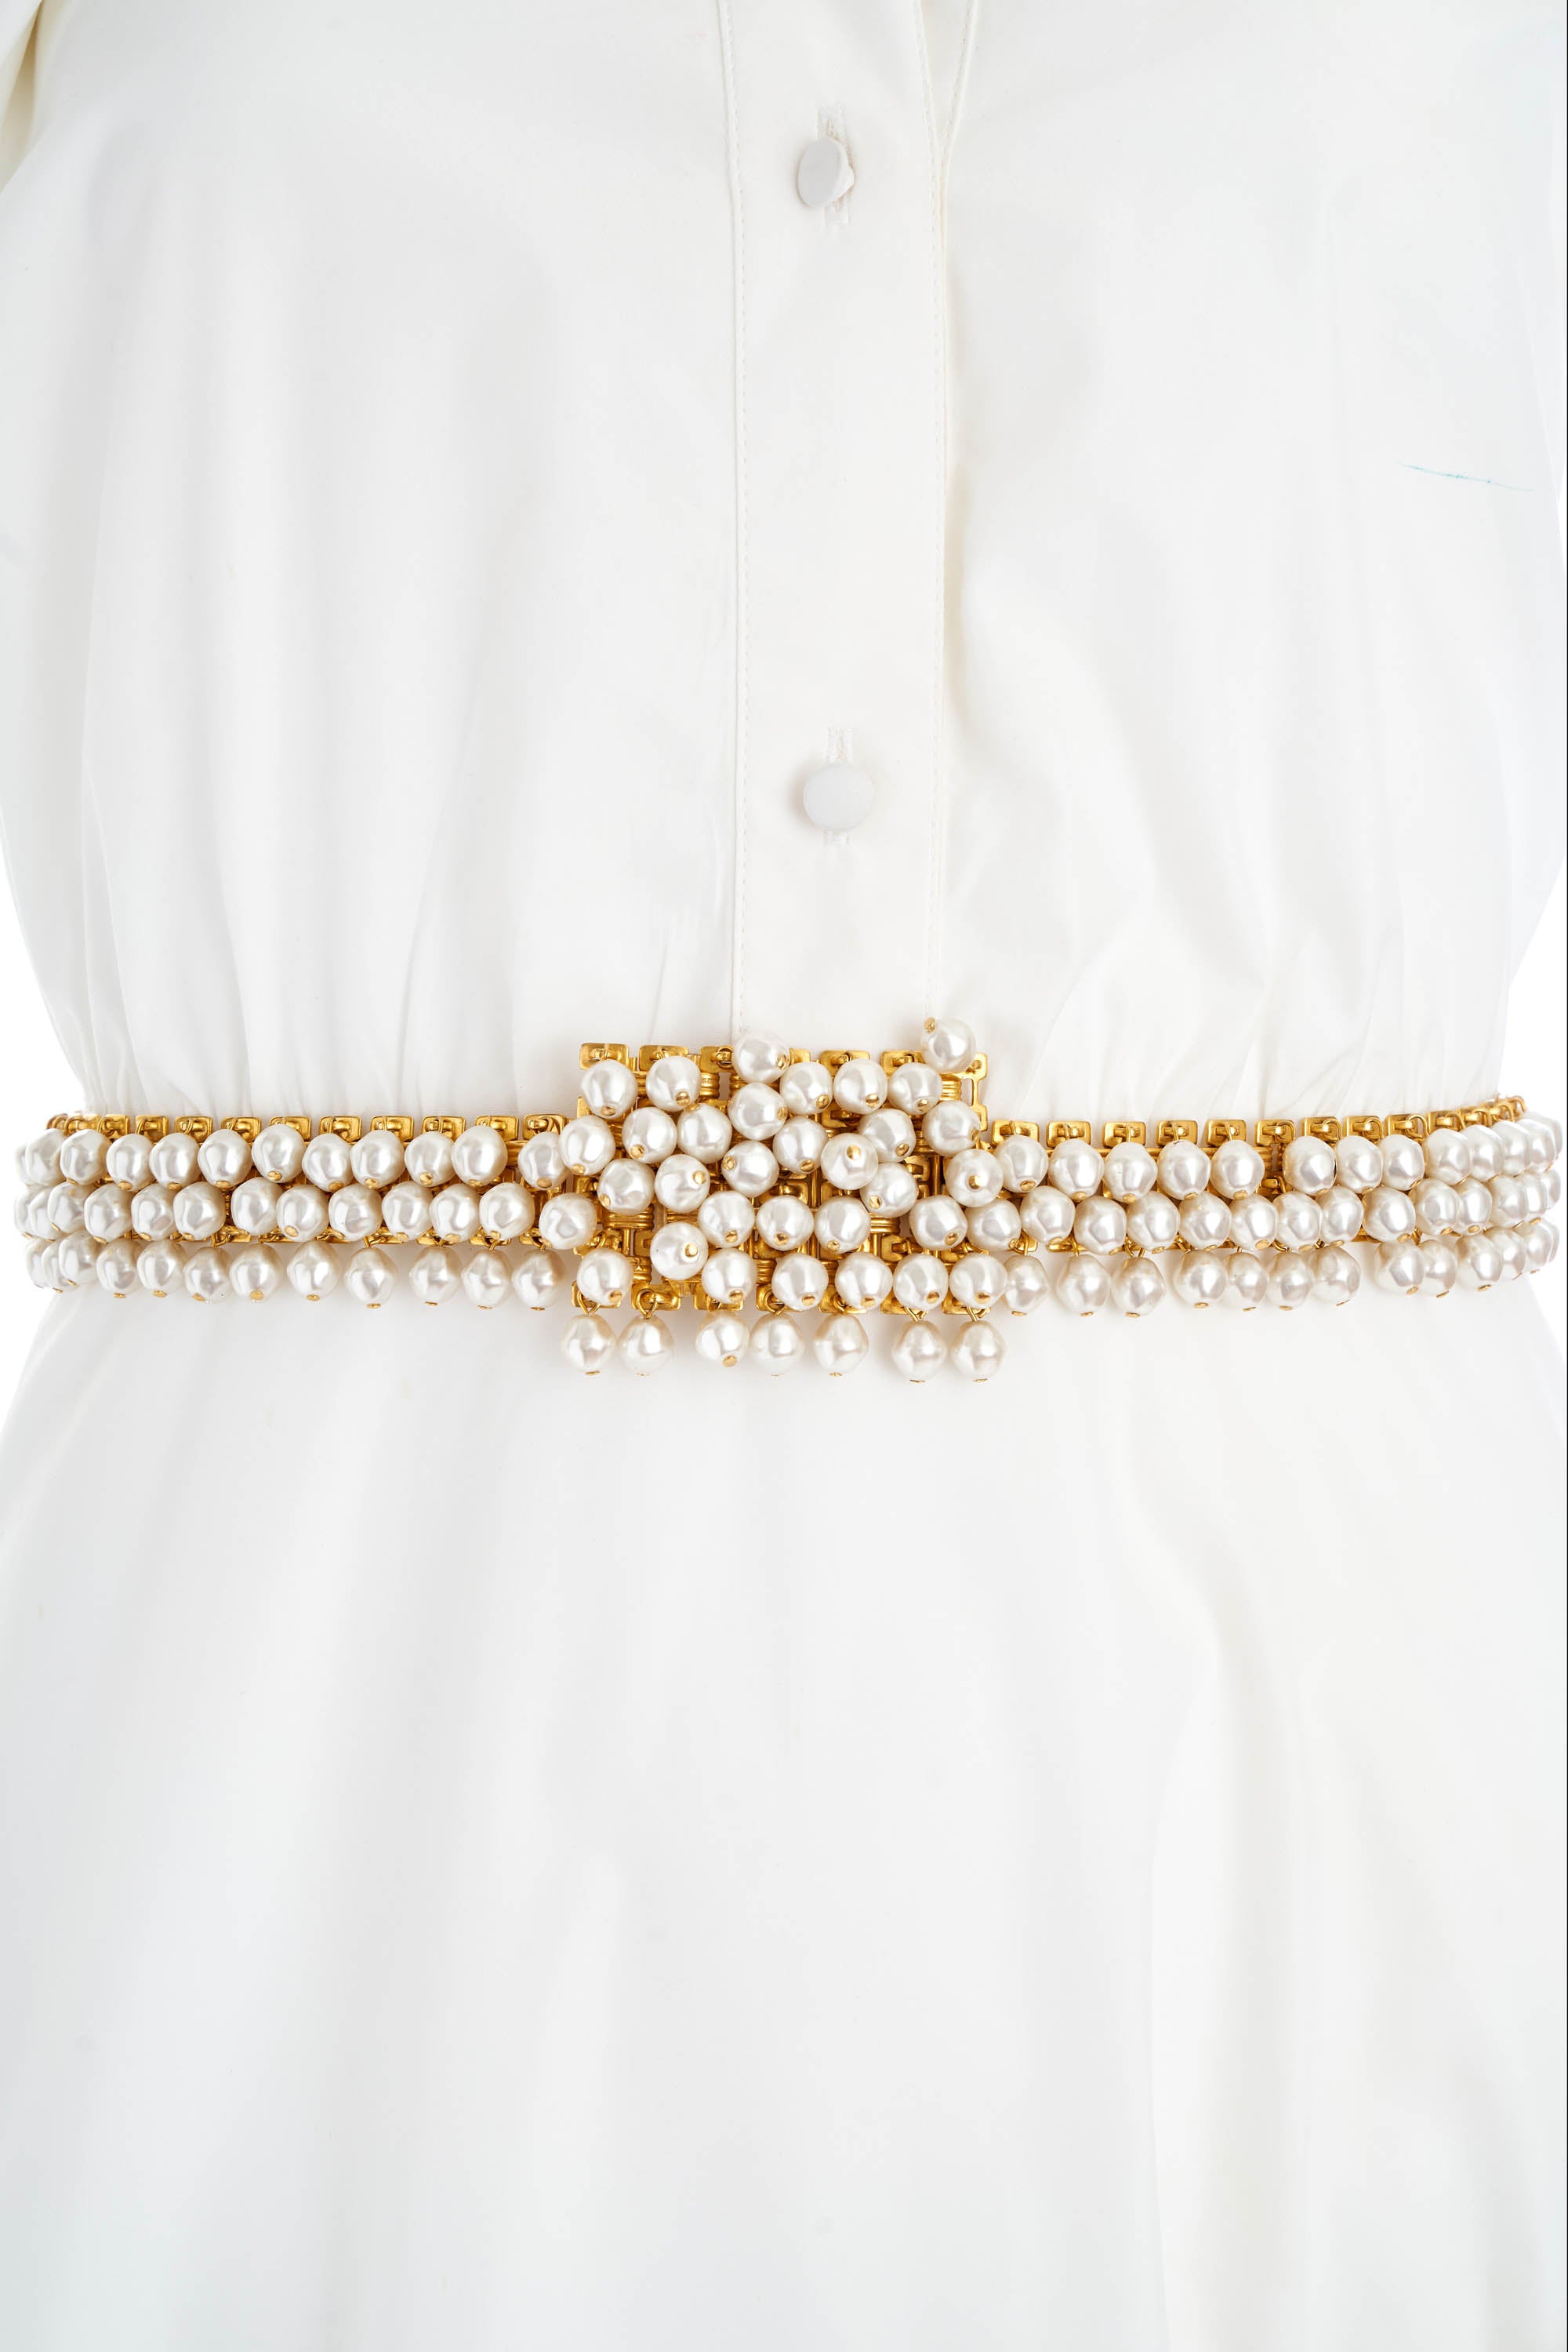 Christian Dior Vintage Gold and Pearl Embellished Belt